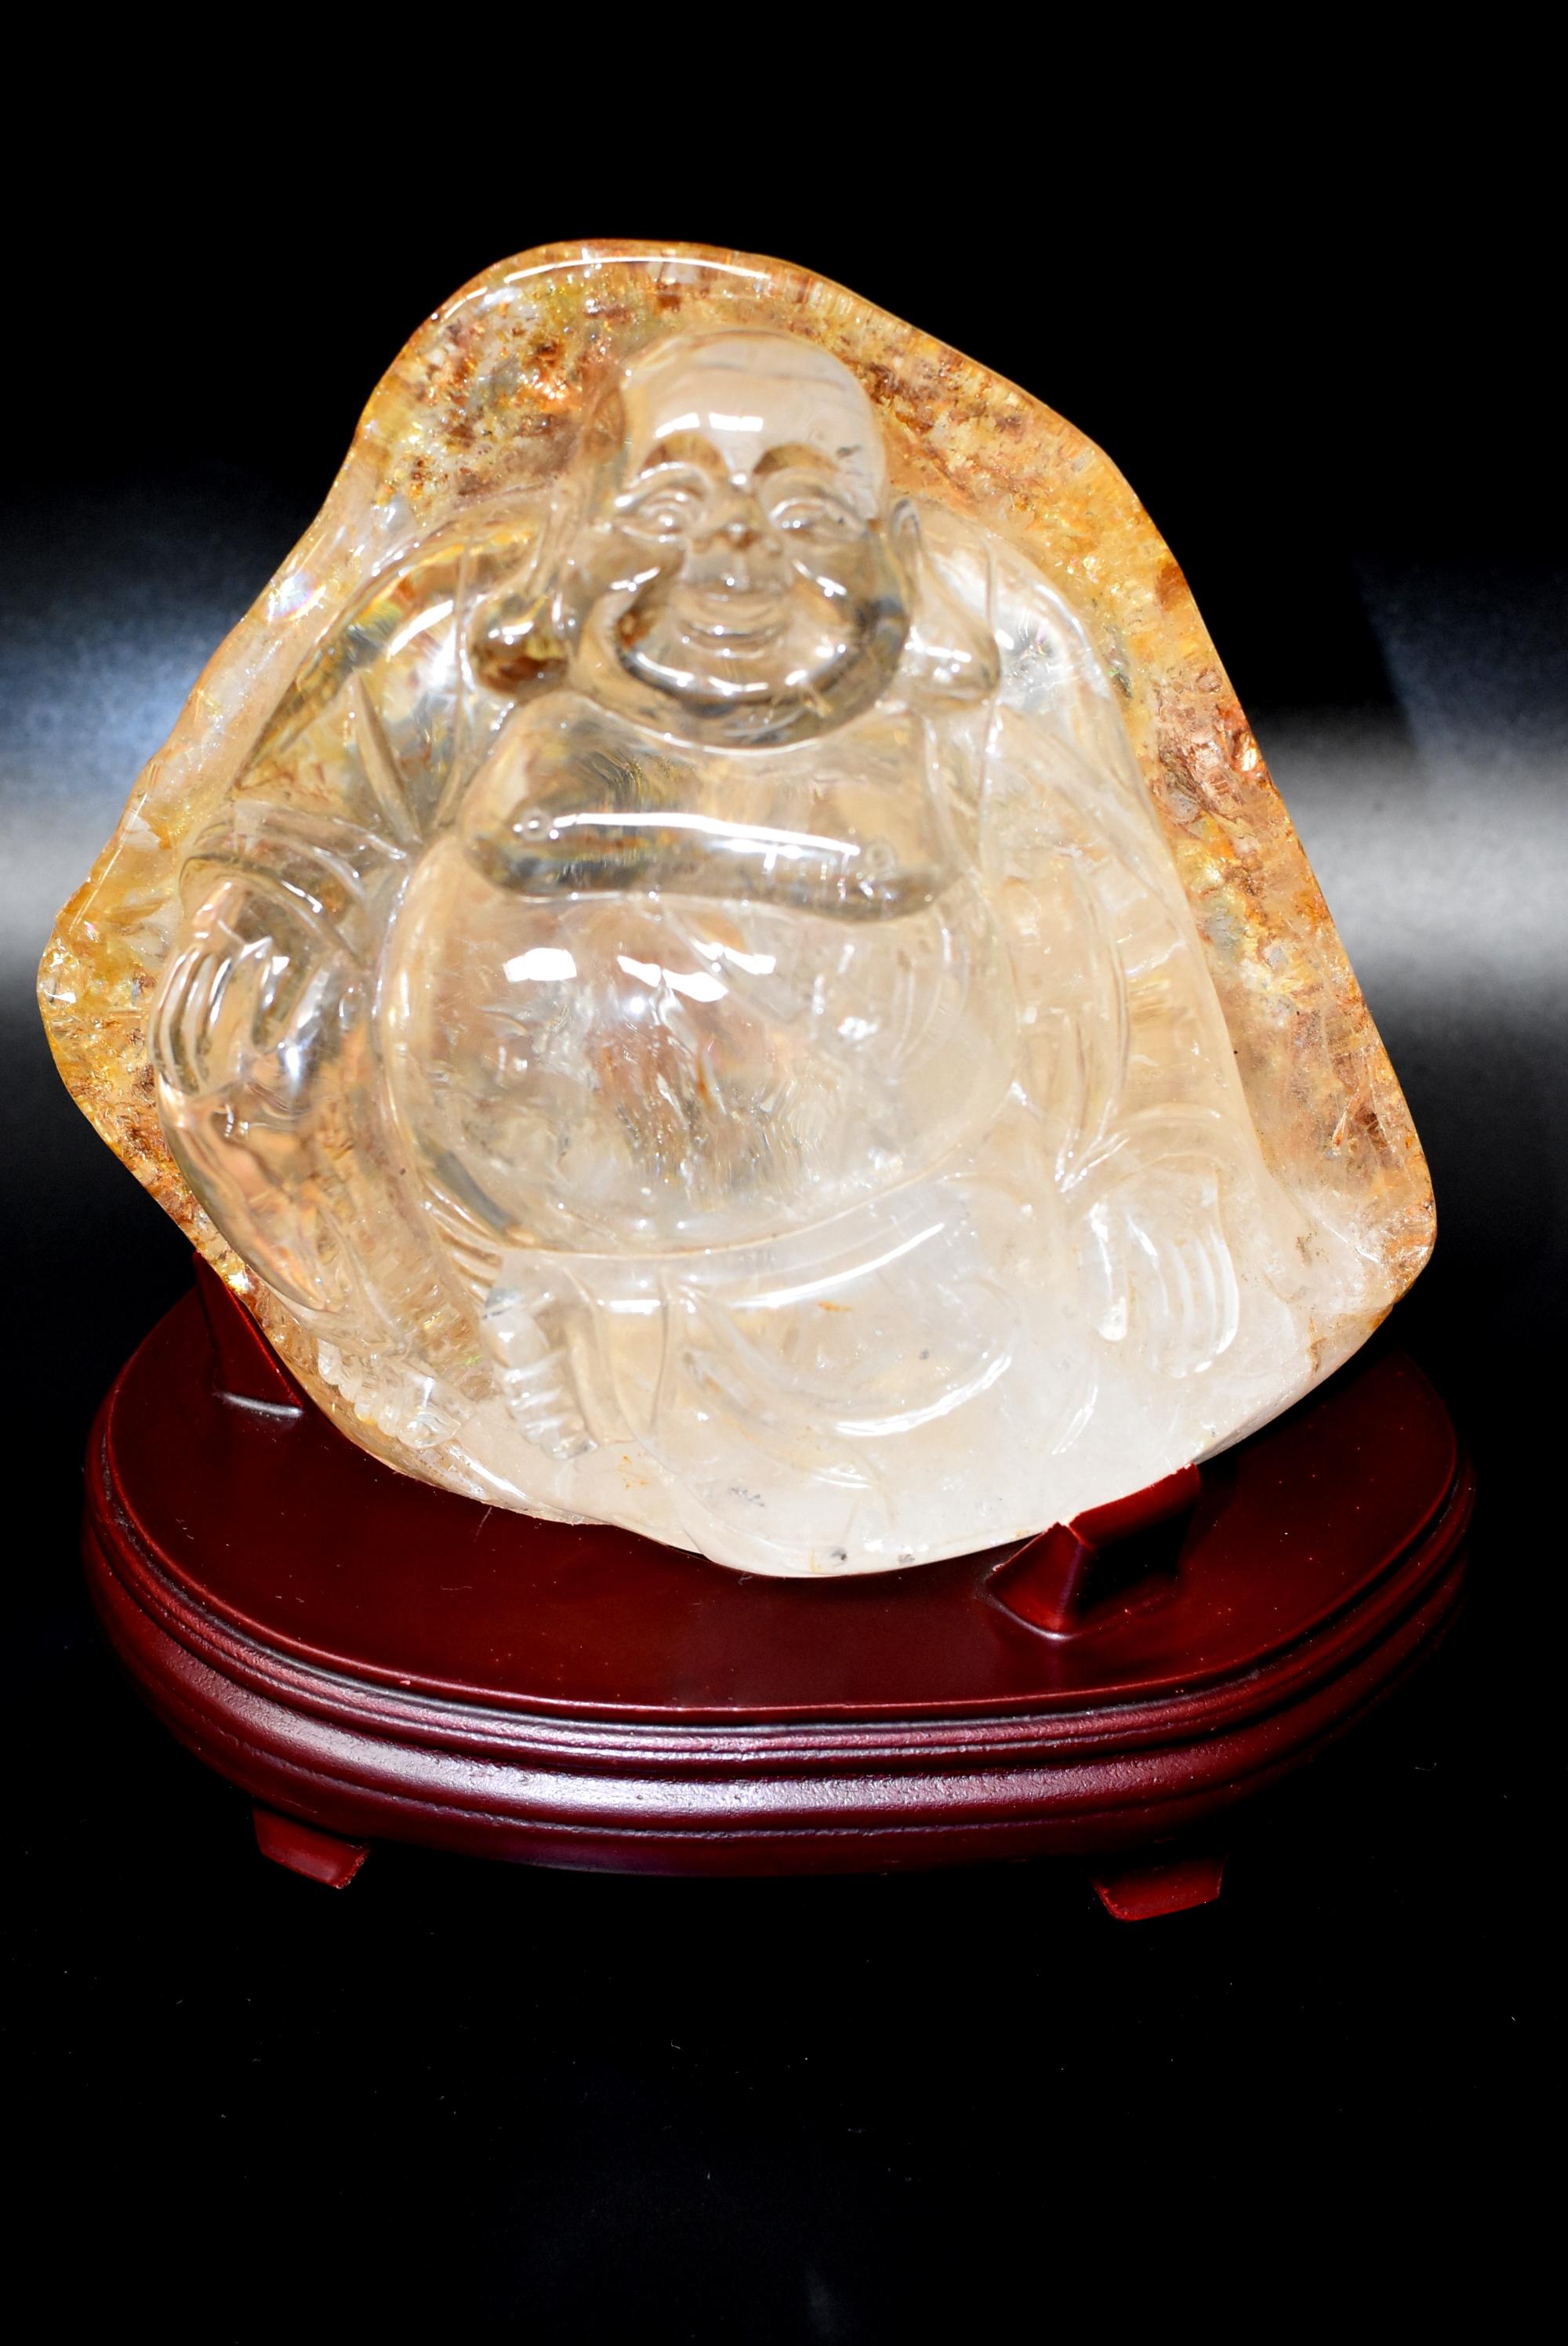 Eine atemberaubende, extra große, ganz natürliche Kristall-Skulptur eines chinesischen Happy Buddha. Der Felsbrocken ist kristallklar mit schönen Goldfäden und Moos auf der Rückseite. Er wiegt insgesamt unglaubliche 7 Pfund. Dies ist ein absolut